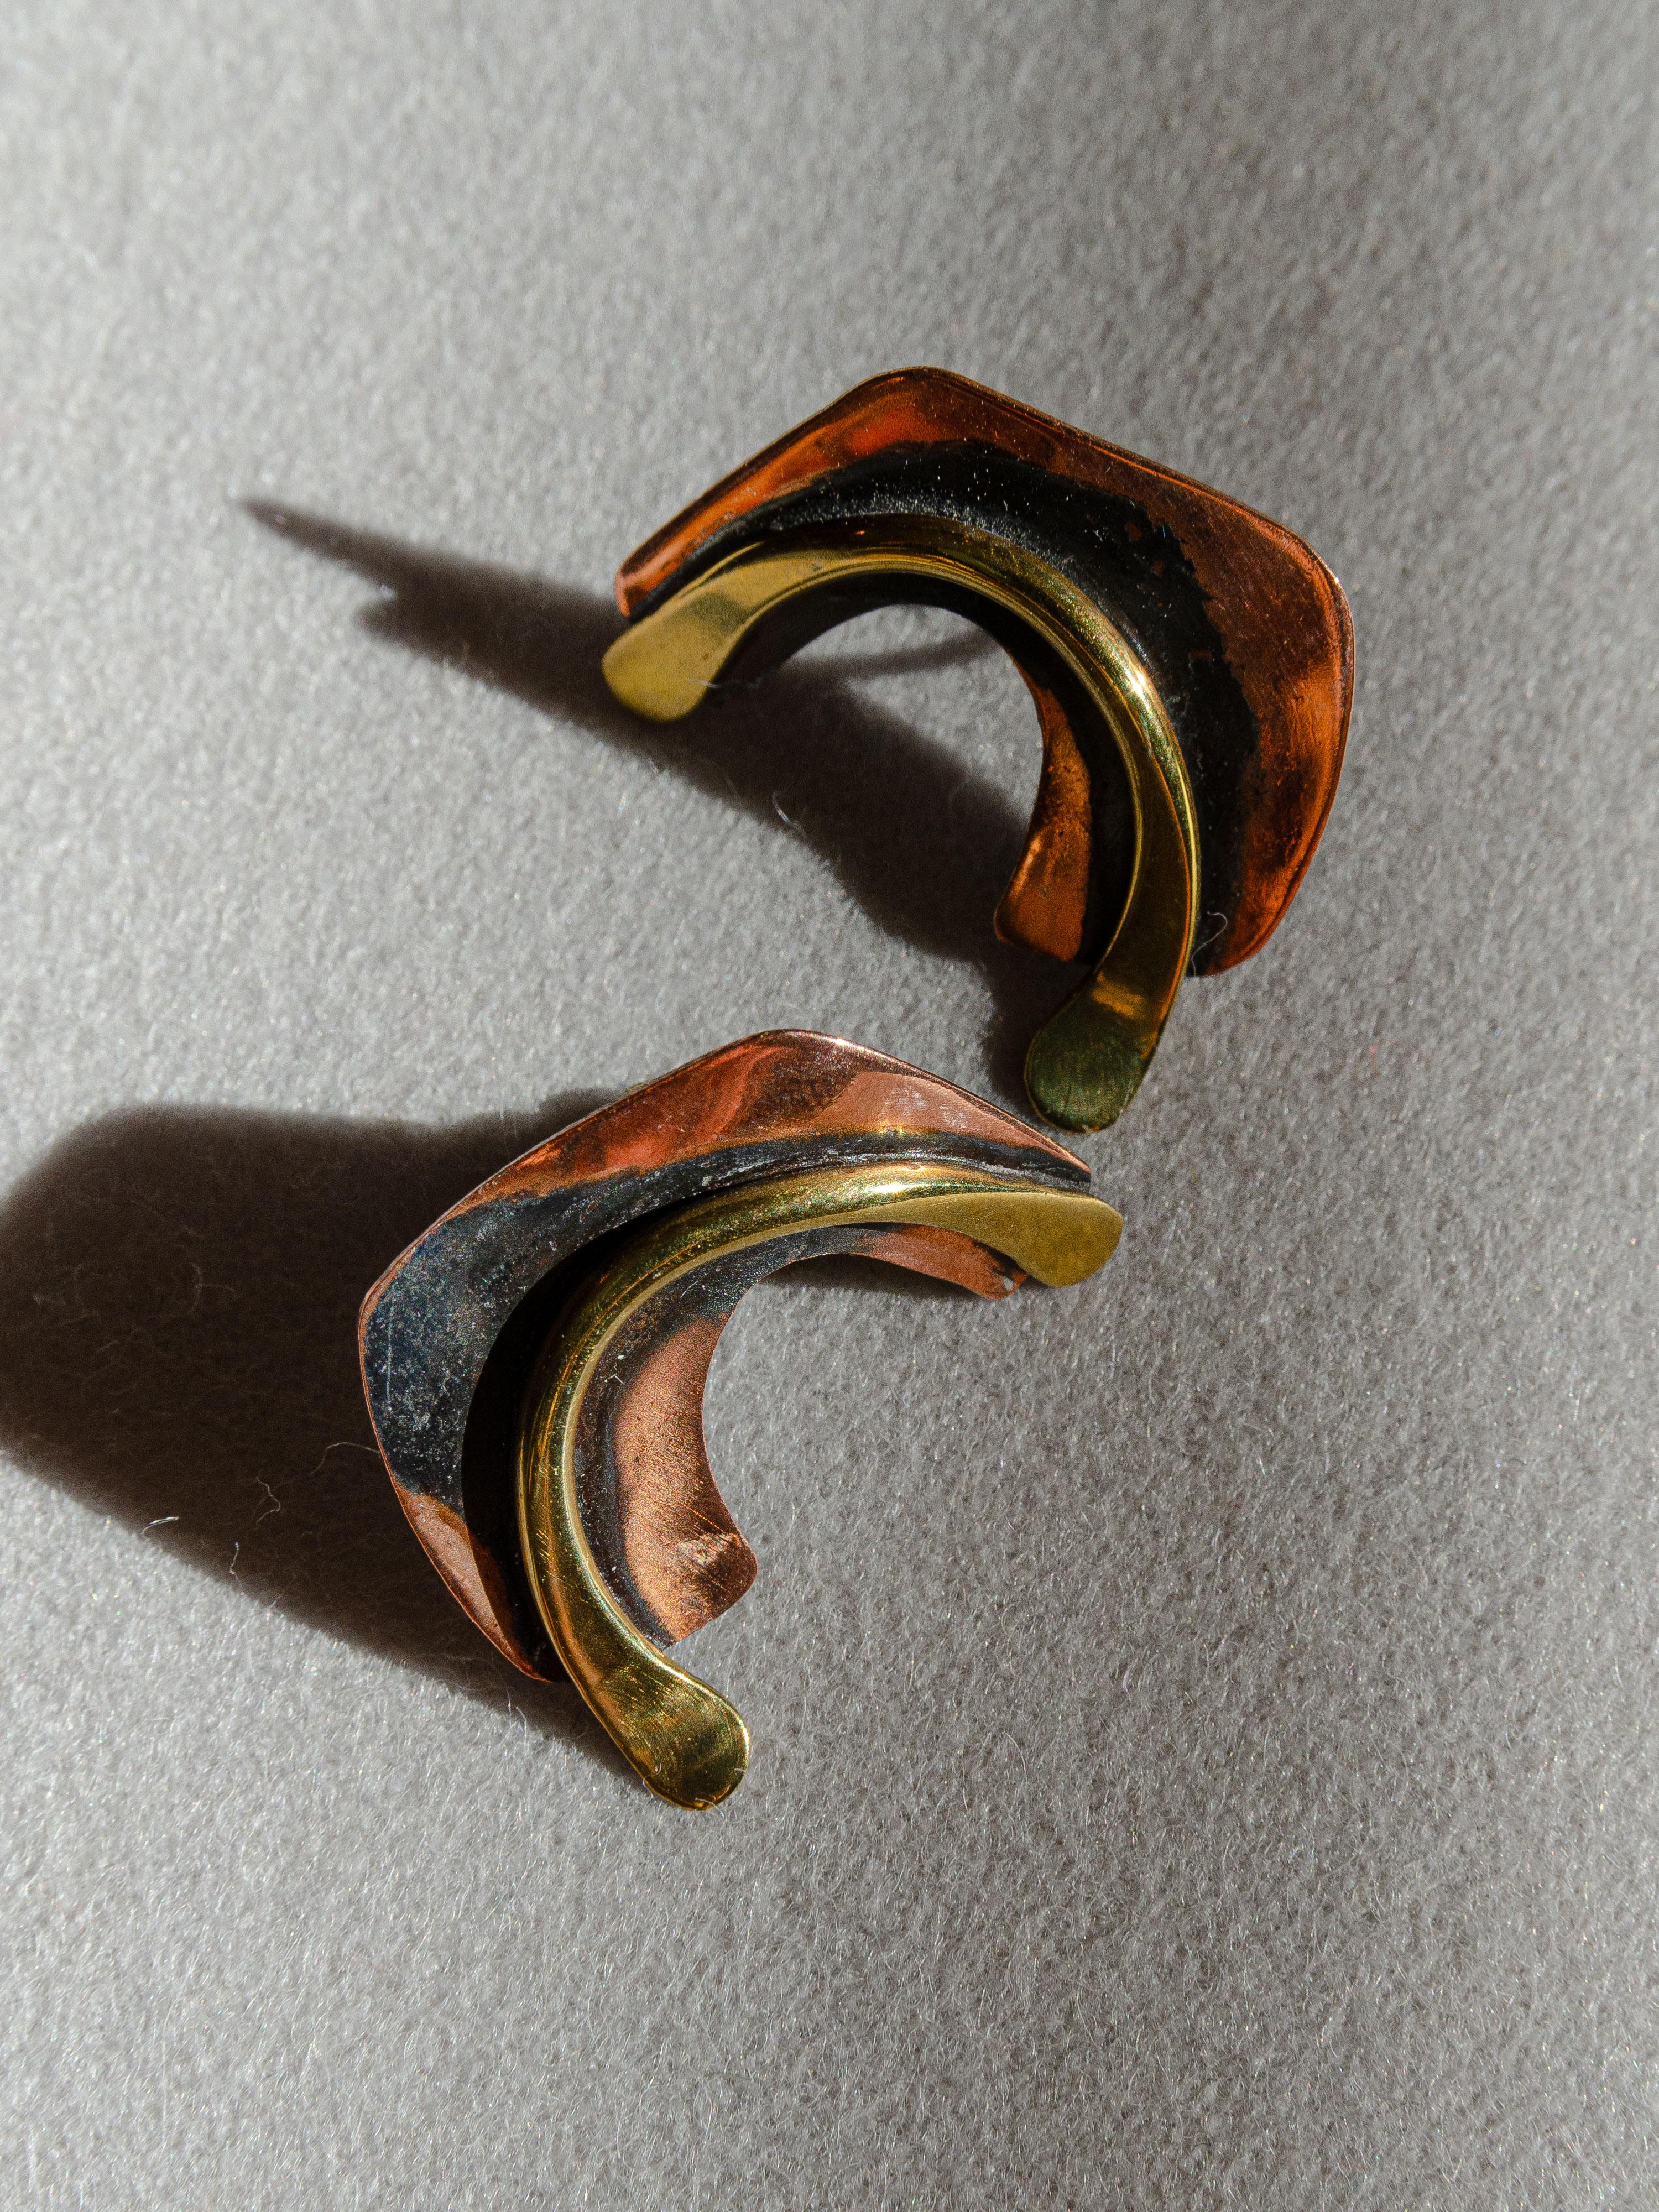 Gracieuse paire de boucles d'oreilles biomorphiques en cuivre et en laiton, conçue par le bijoutier moderniste de Greenwich Village, Art Smith, dans les années 1950. Jewell est considéré comme l'un des maîtres joailliers du mouvement moderniste du